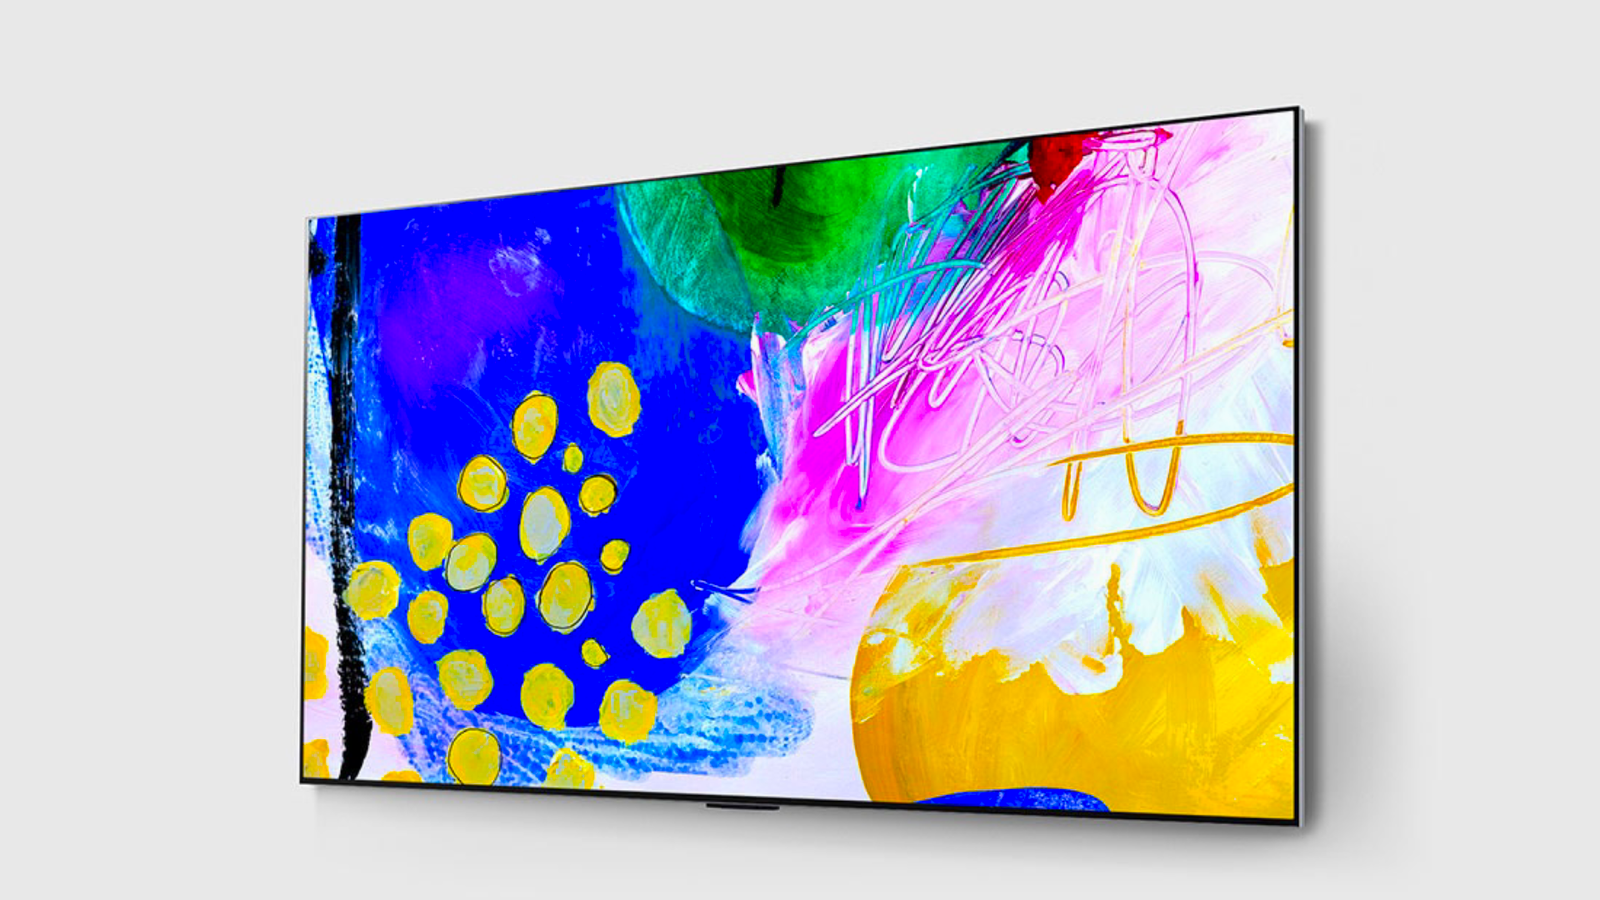 LG G3 vs LG G2 - An image of a wall-mounted LG G2 TV